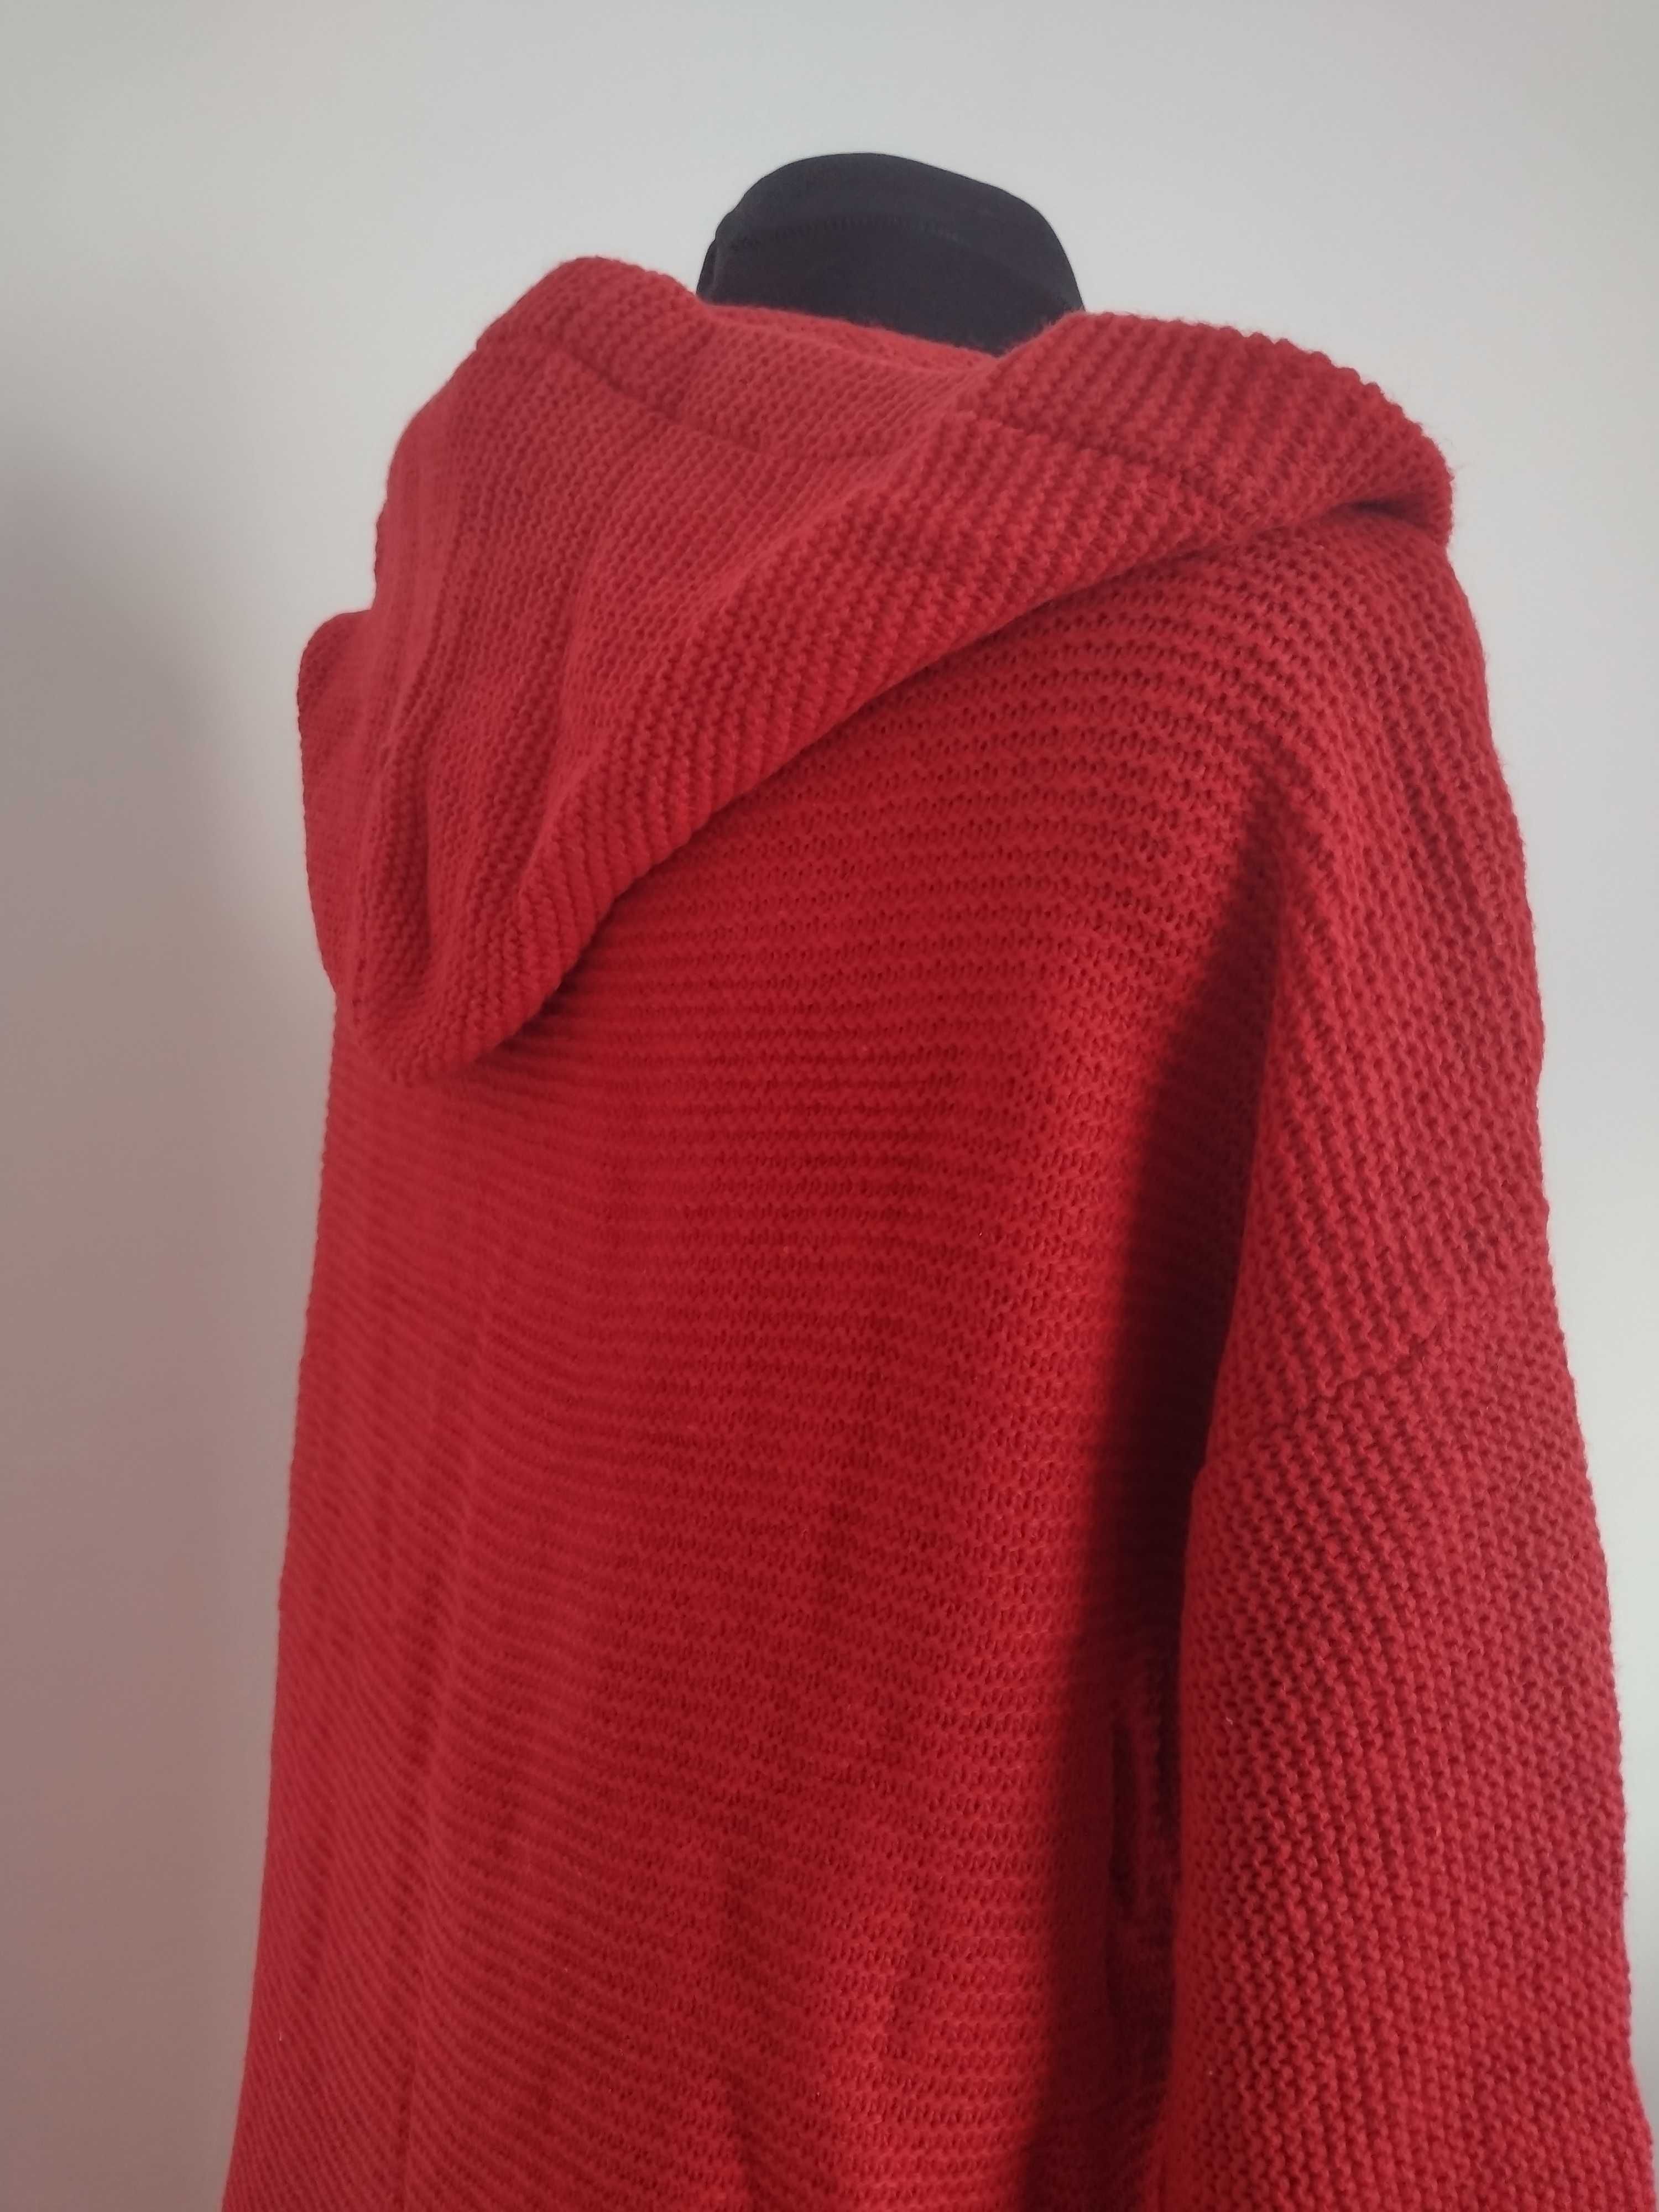 Czerwony sweter długi ciepły L guziki NOWY